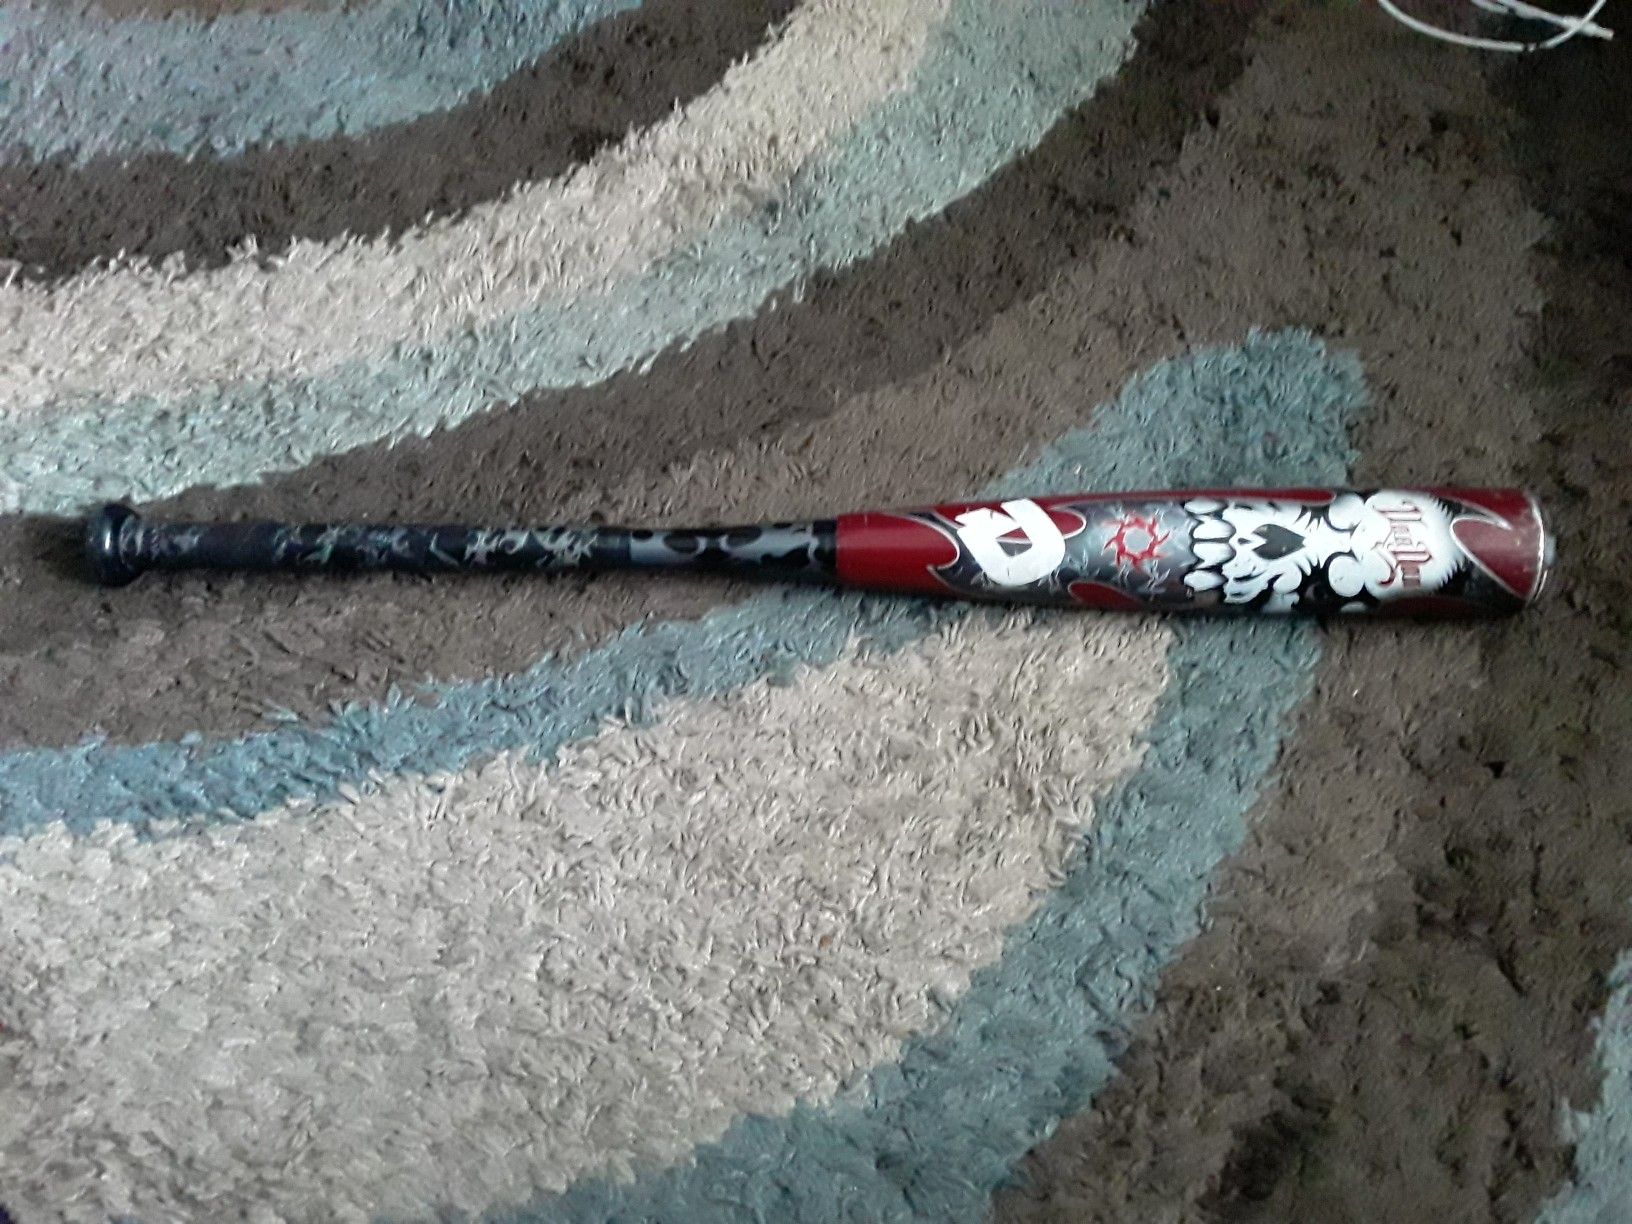 Demarini voodoo 30/21 baseball bat